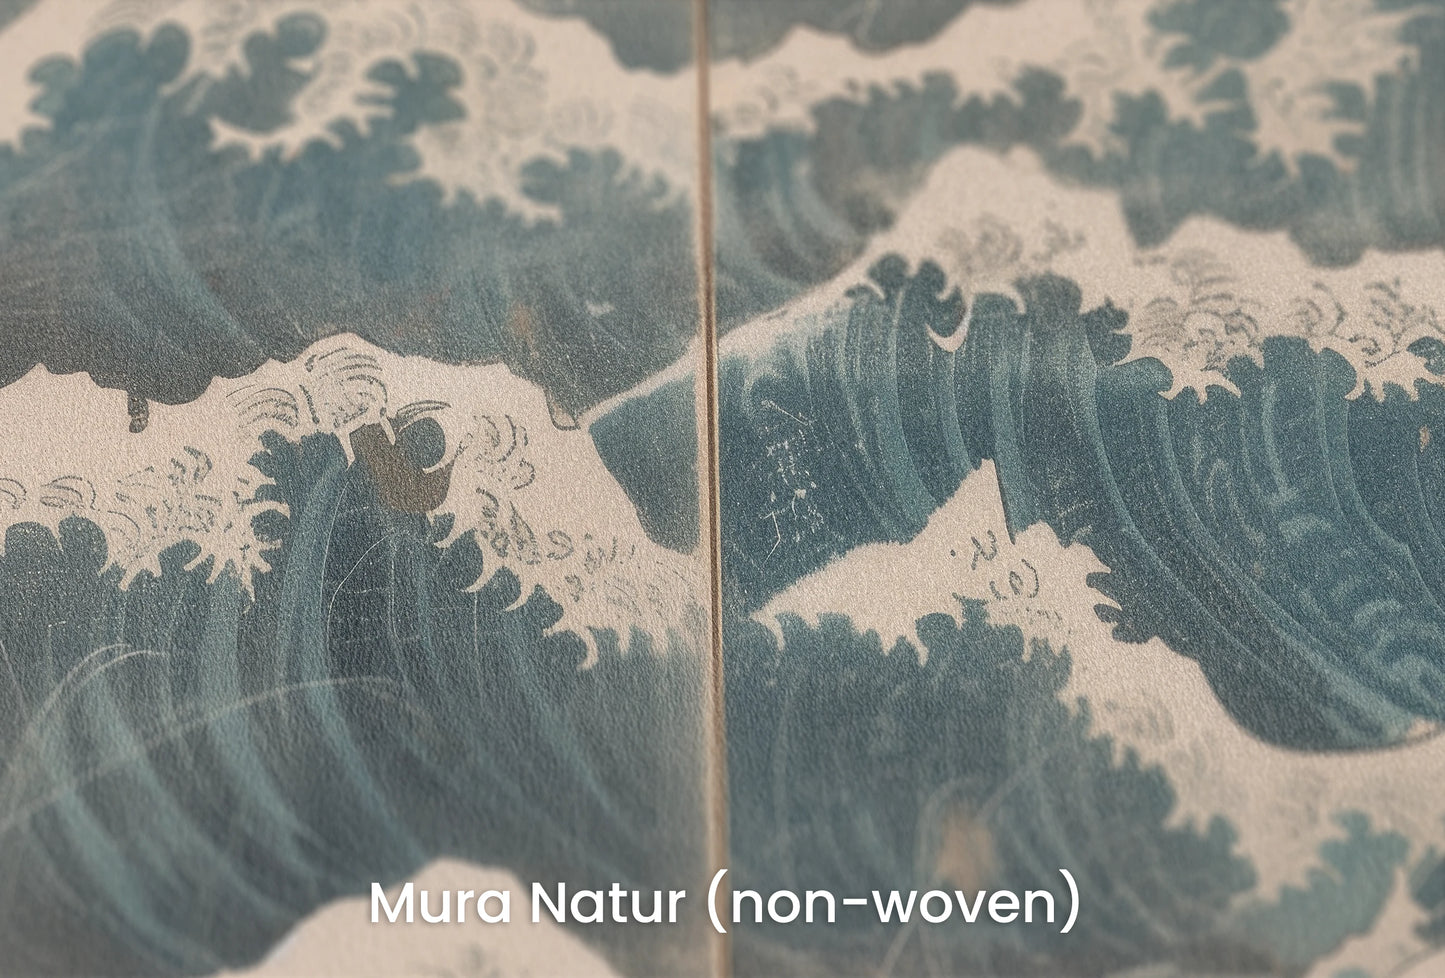 Zbliżenie na artystyczną fototapetę o nazwie Serene Ocean Hues na podłożu Mura Natur (non-woven) - naturalne i ekologiczne podłoże.